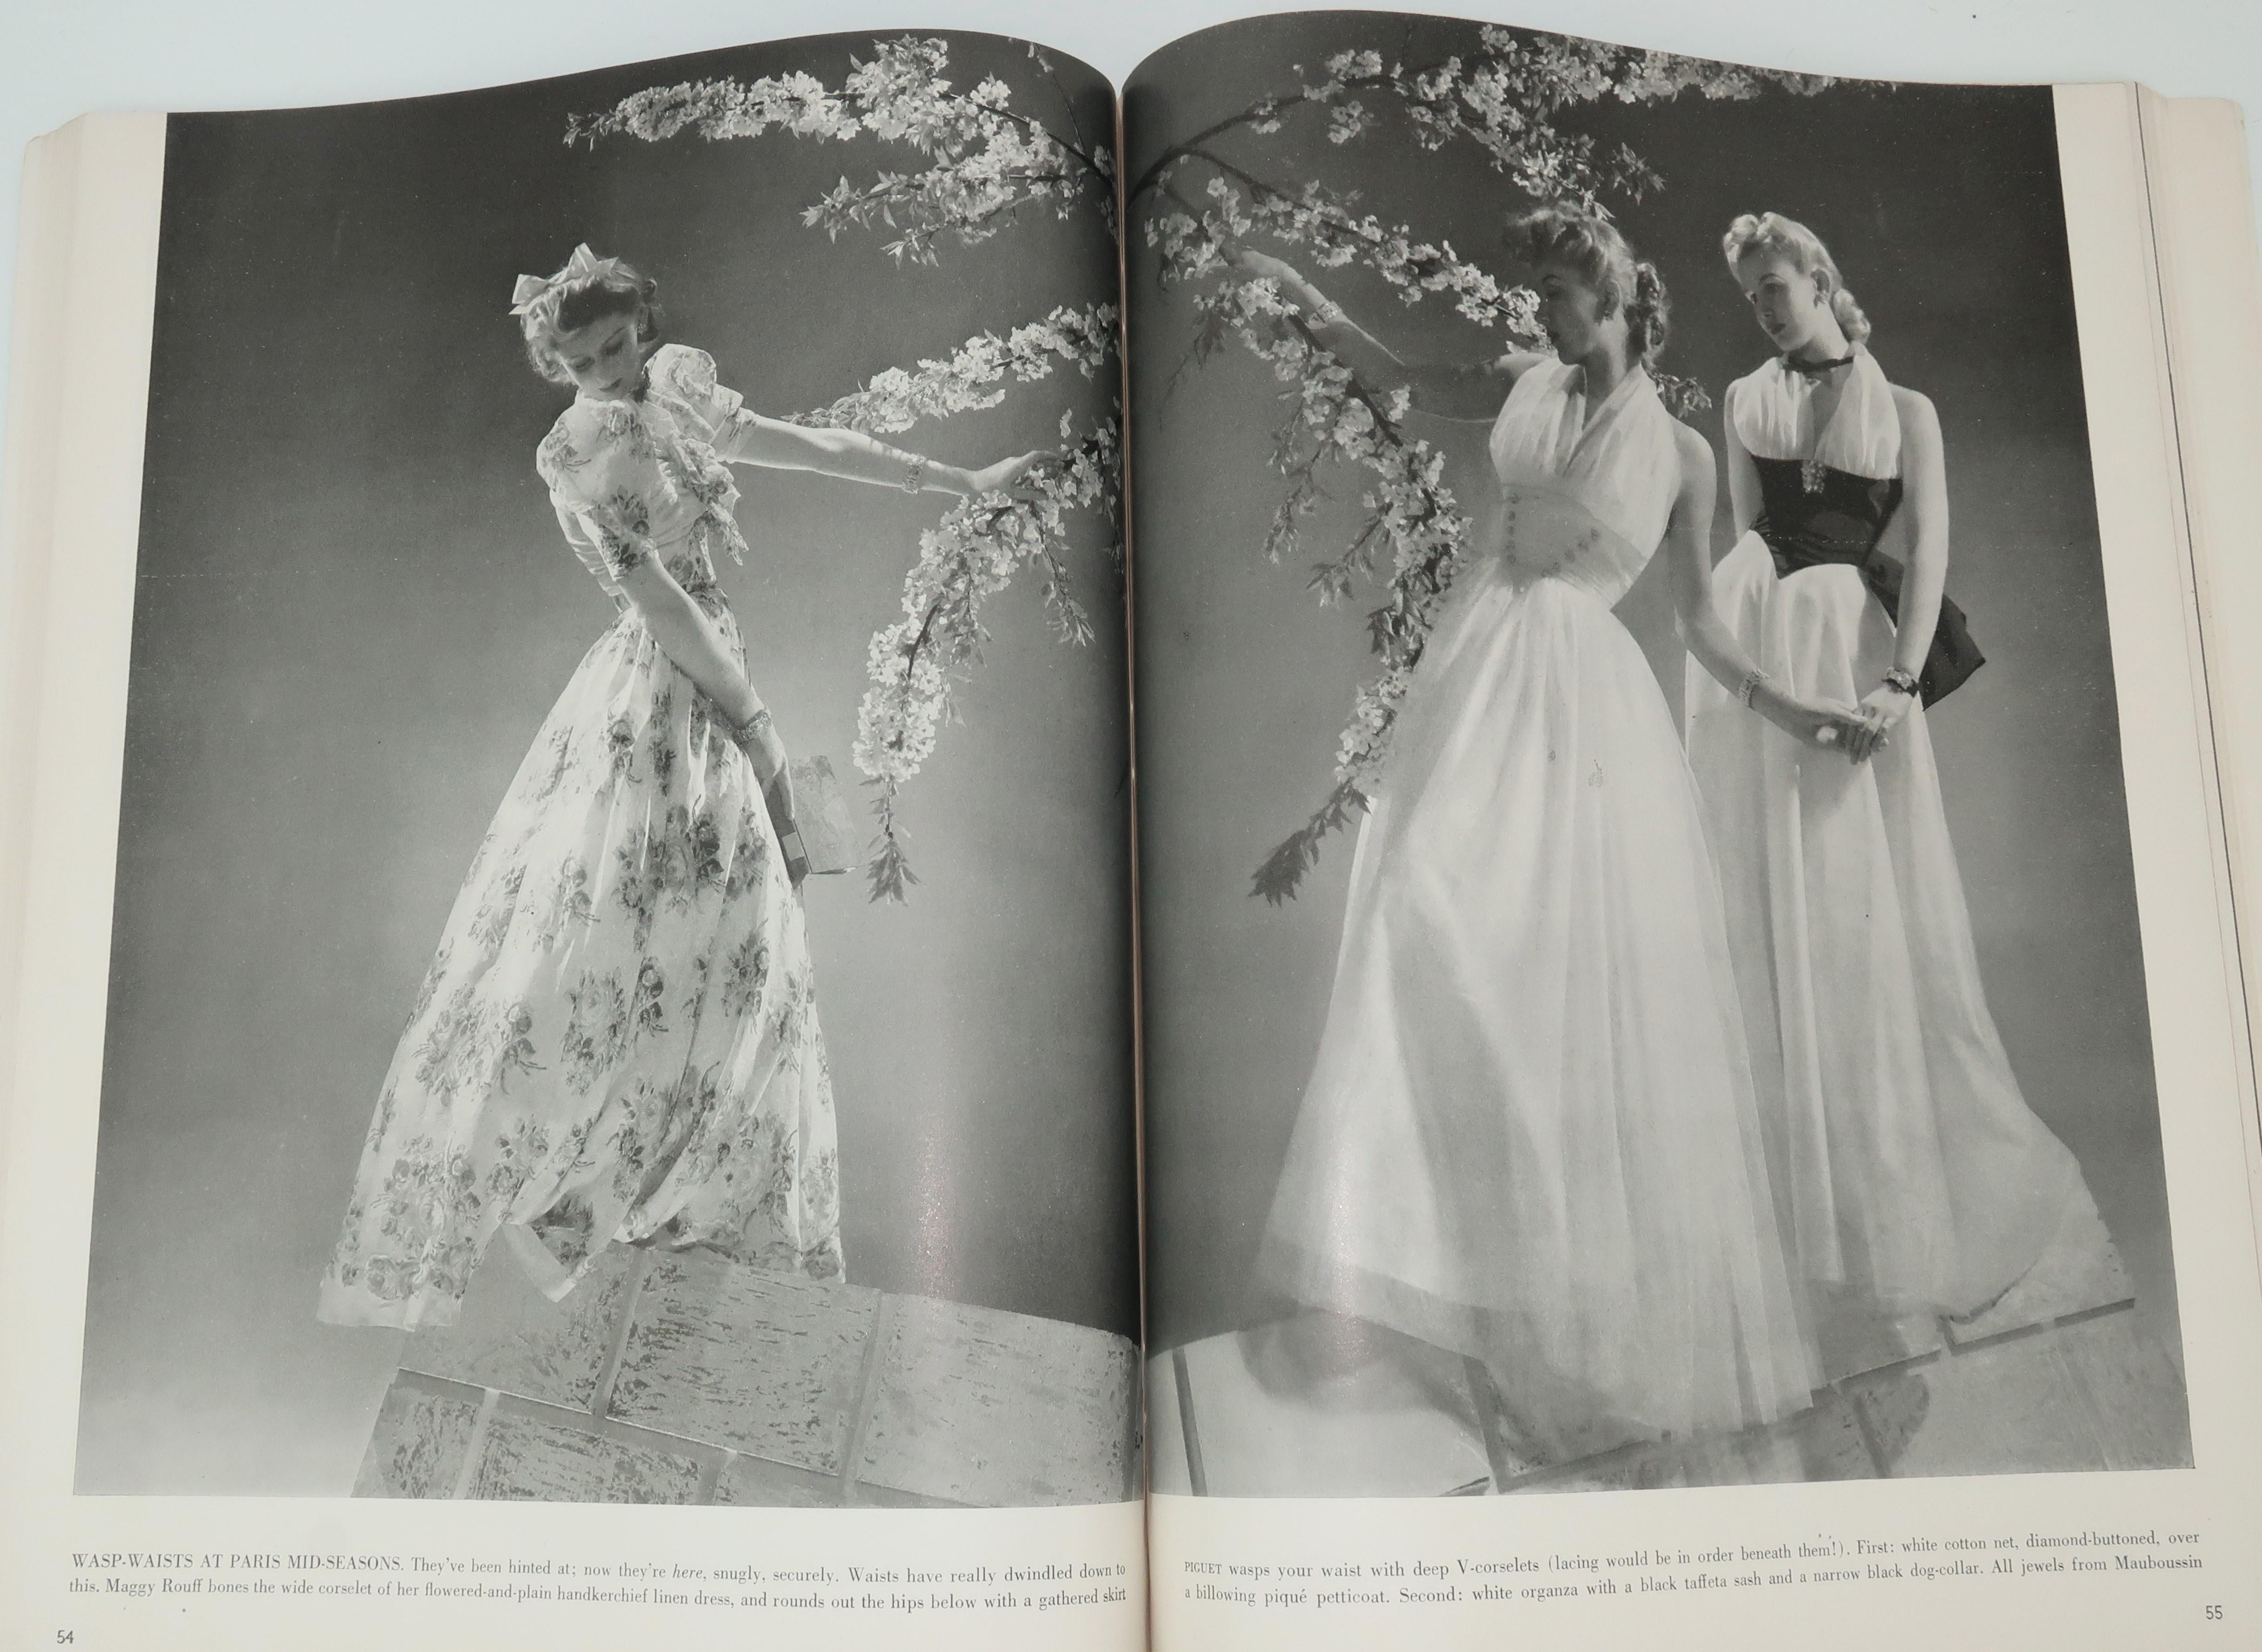 1939 Vogue Magazine With Salvador Dali Cover Art 3